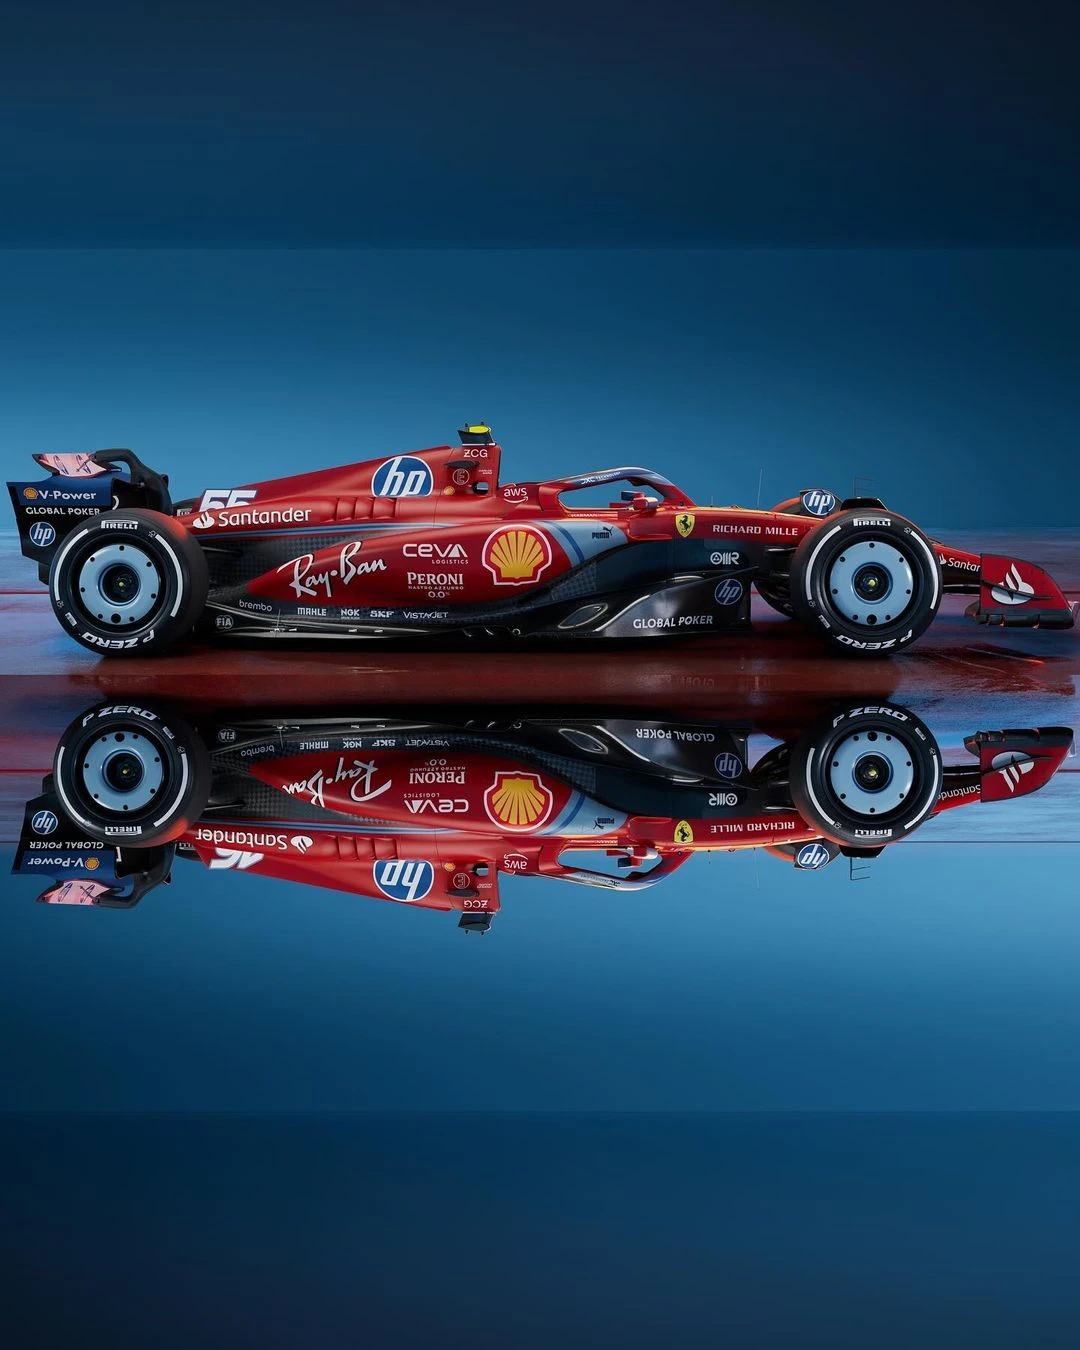 Ferrari'nin Miami GP'sinde kullanacağı özel renk düzeni gallery image 3